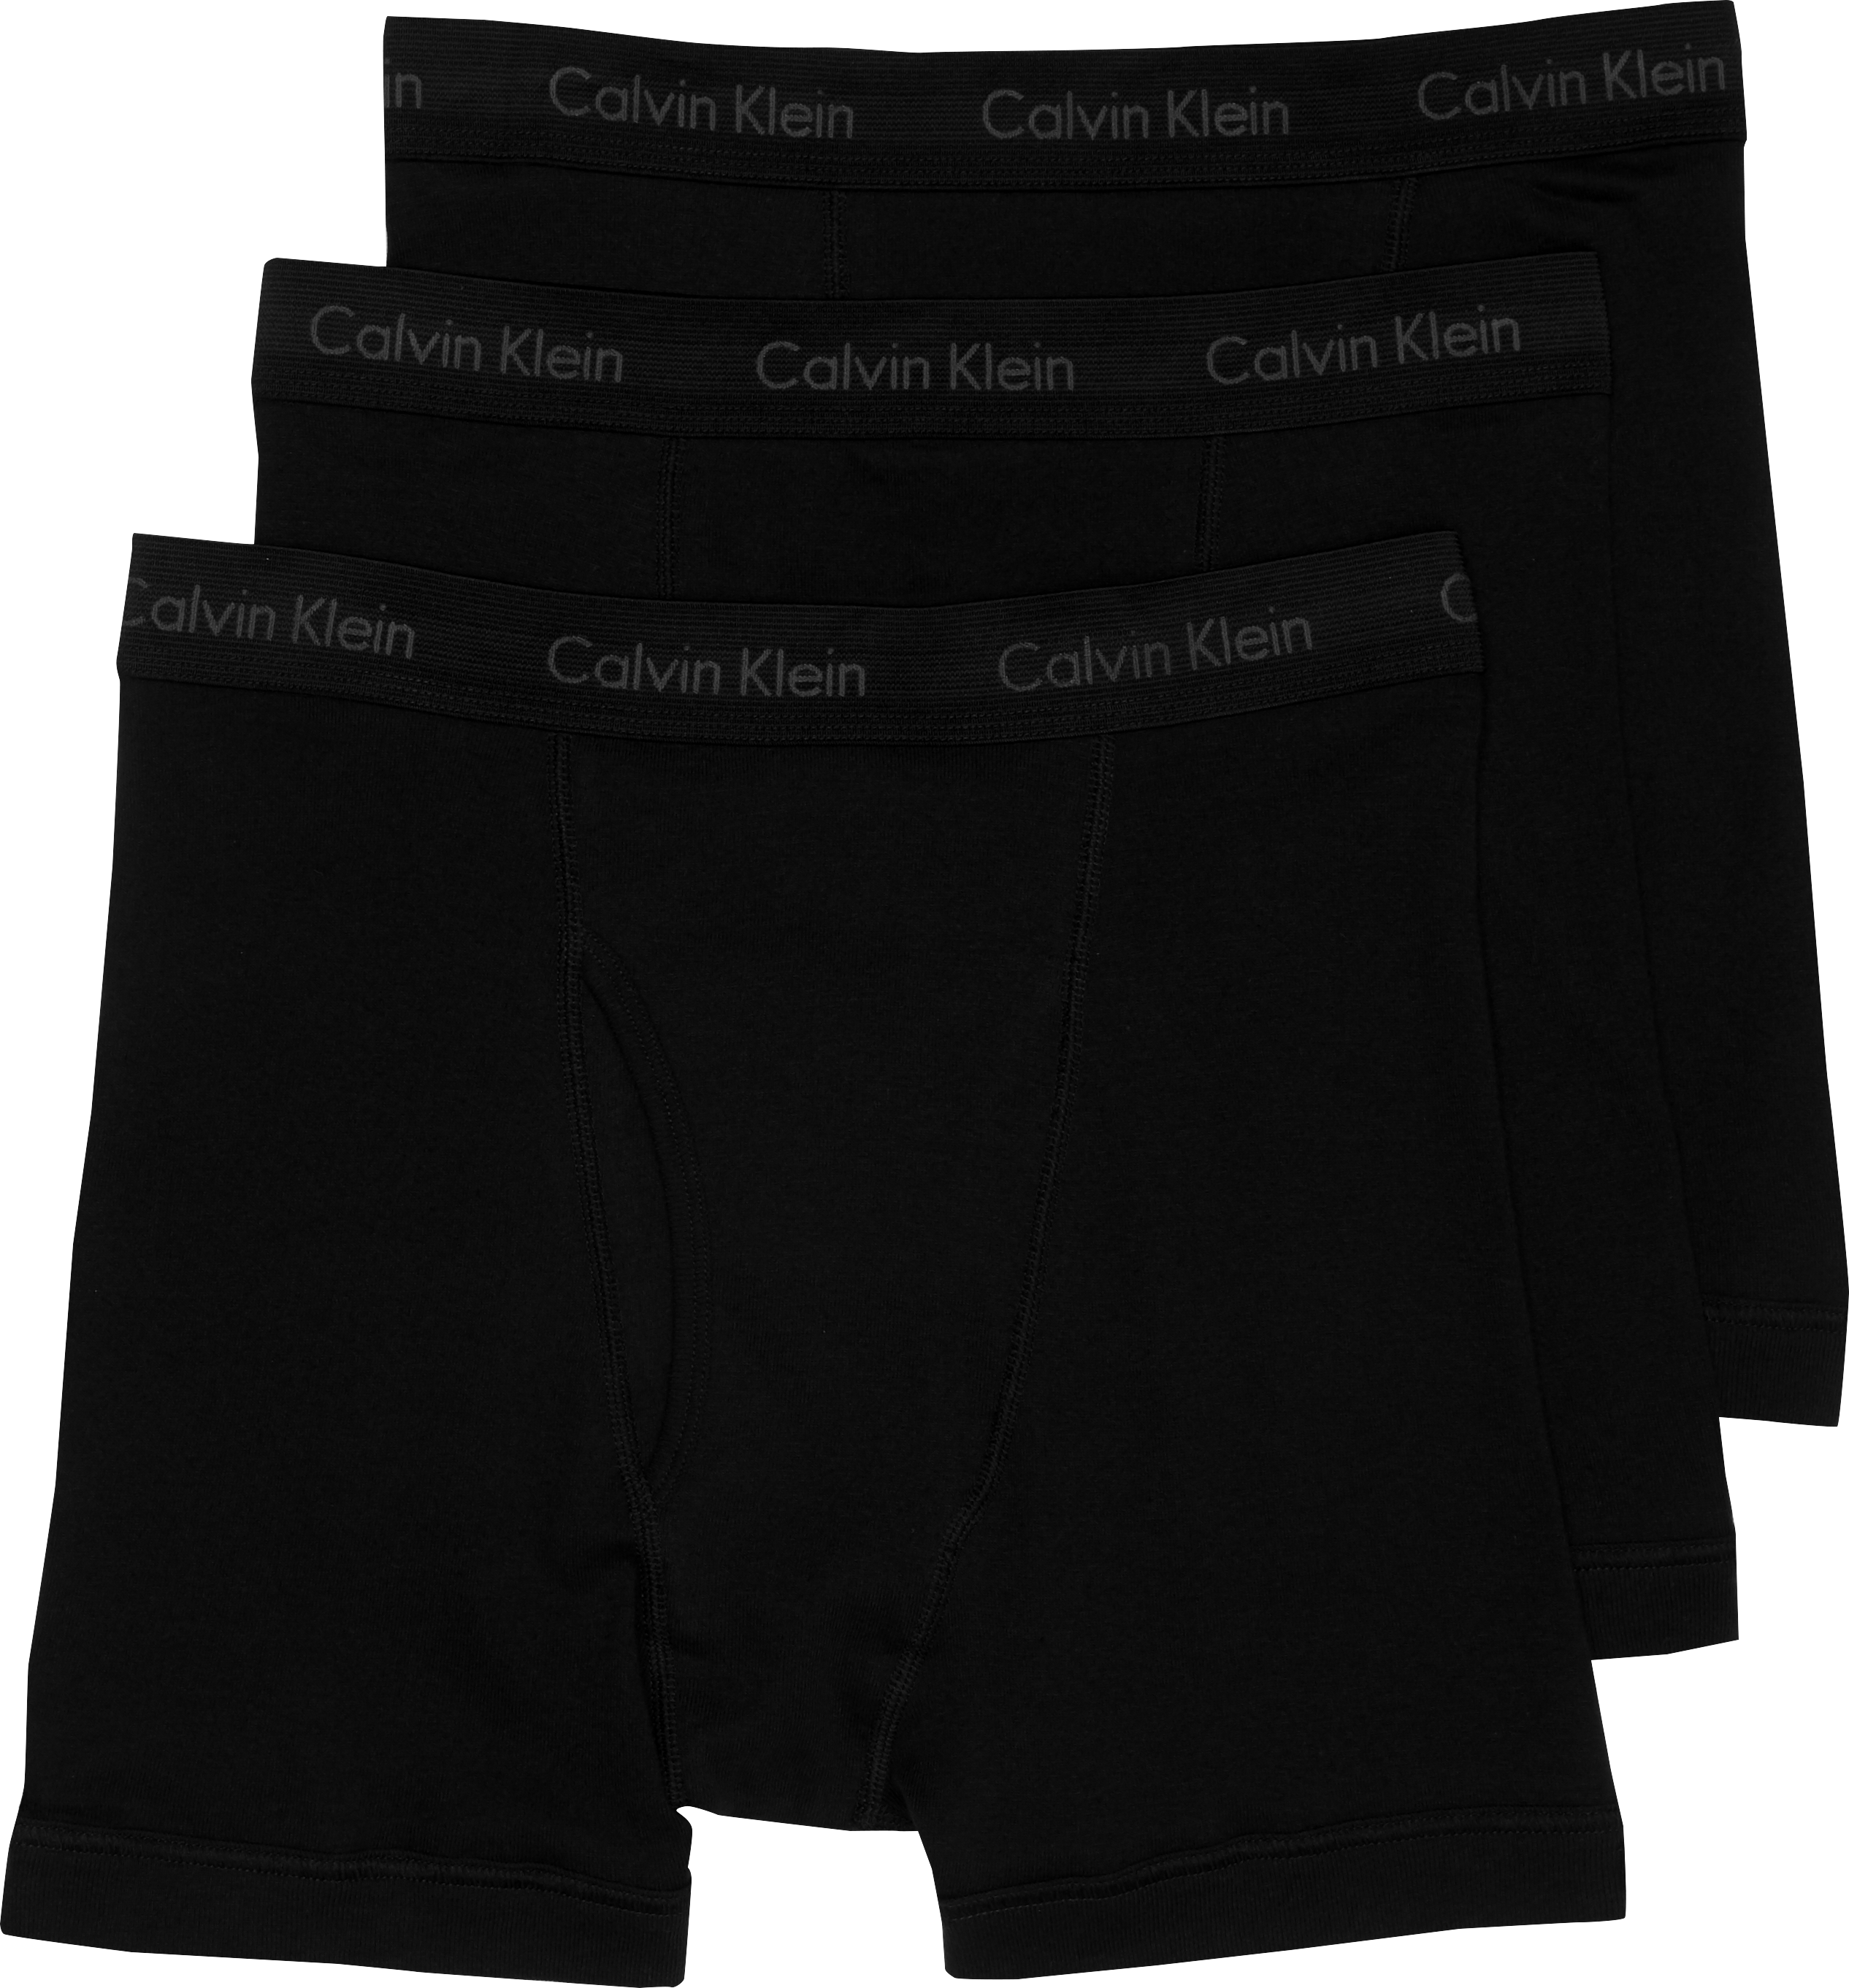 calvin klein men's underwear 100 cotton